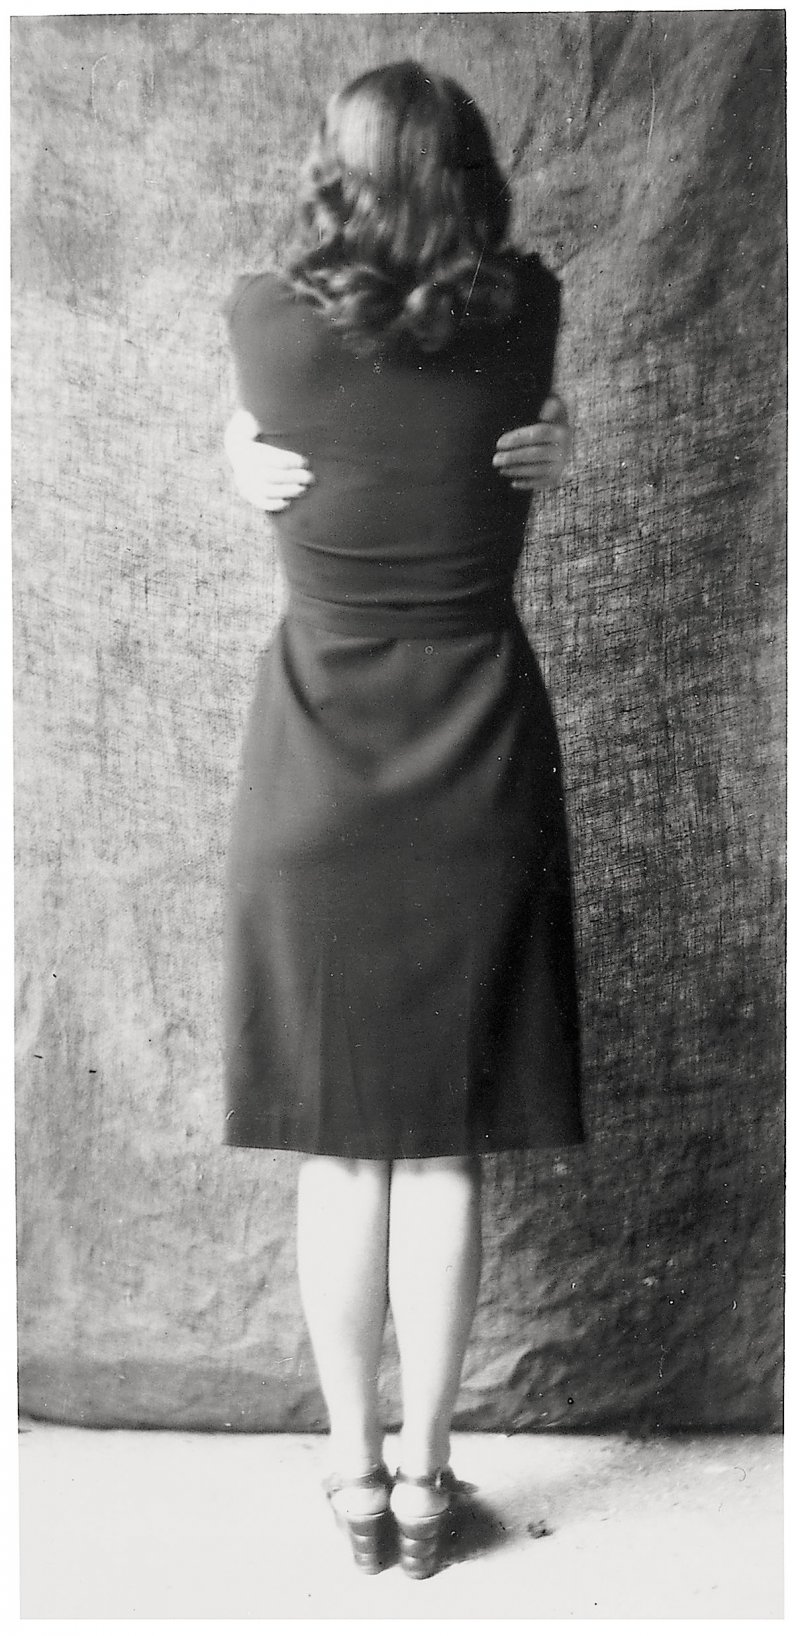 Georgette Magritte h. 1947 Copia moderna ​​​​​​​Colección privada, cortesía de la Brachot Gallery, Bruselas